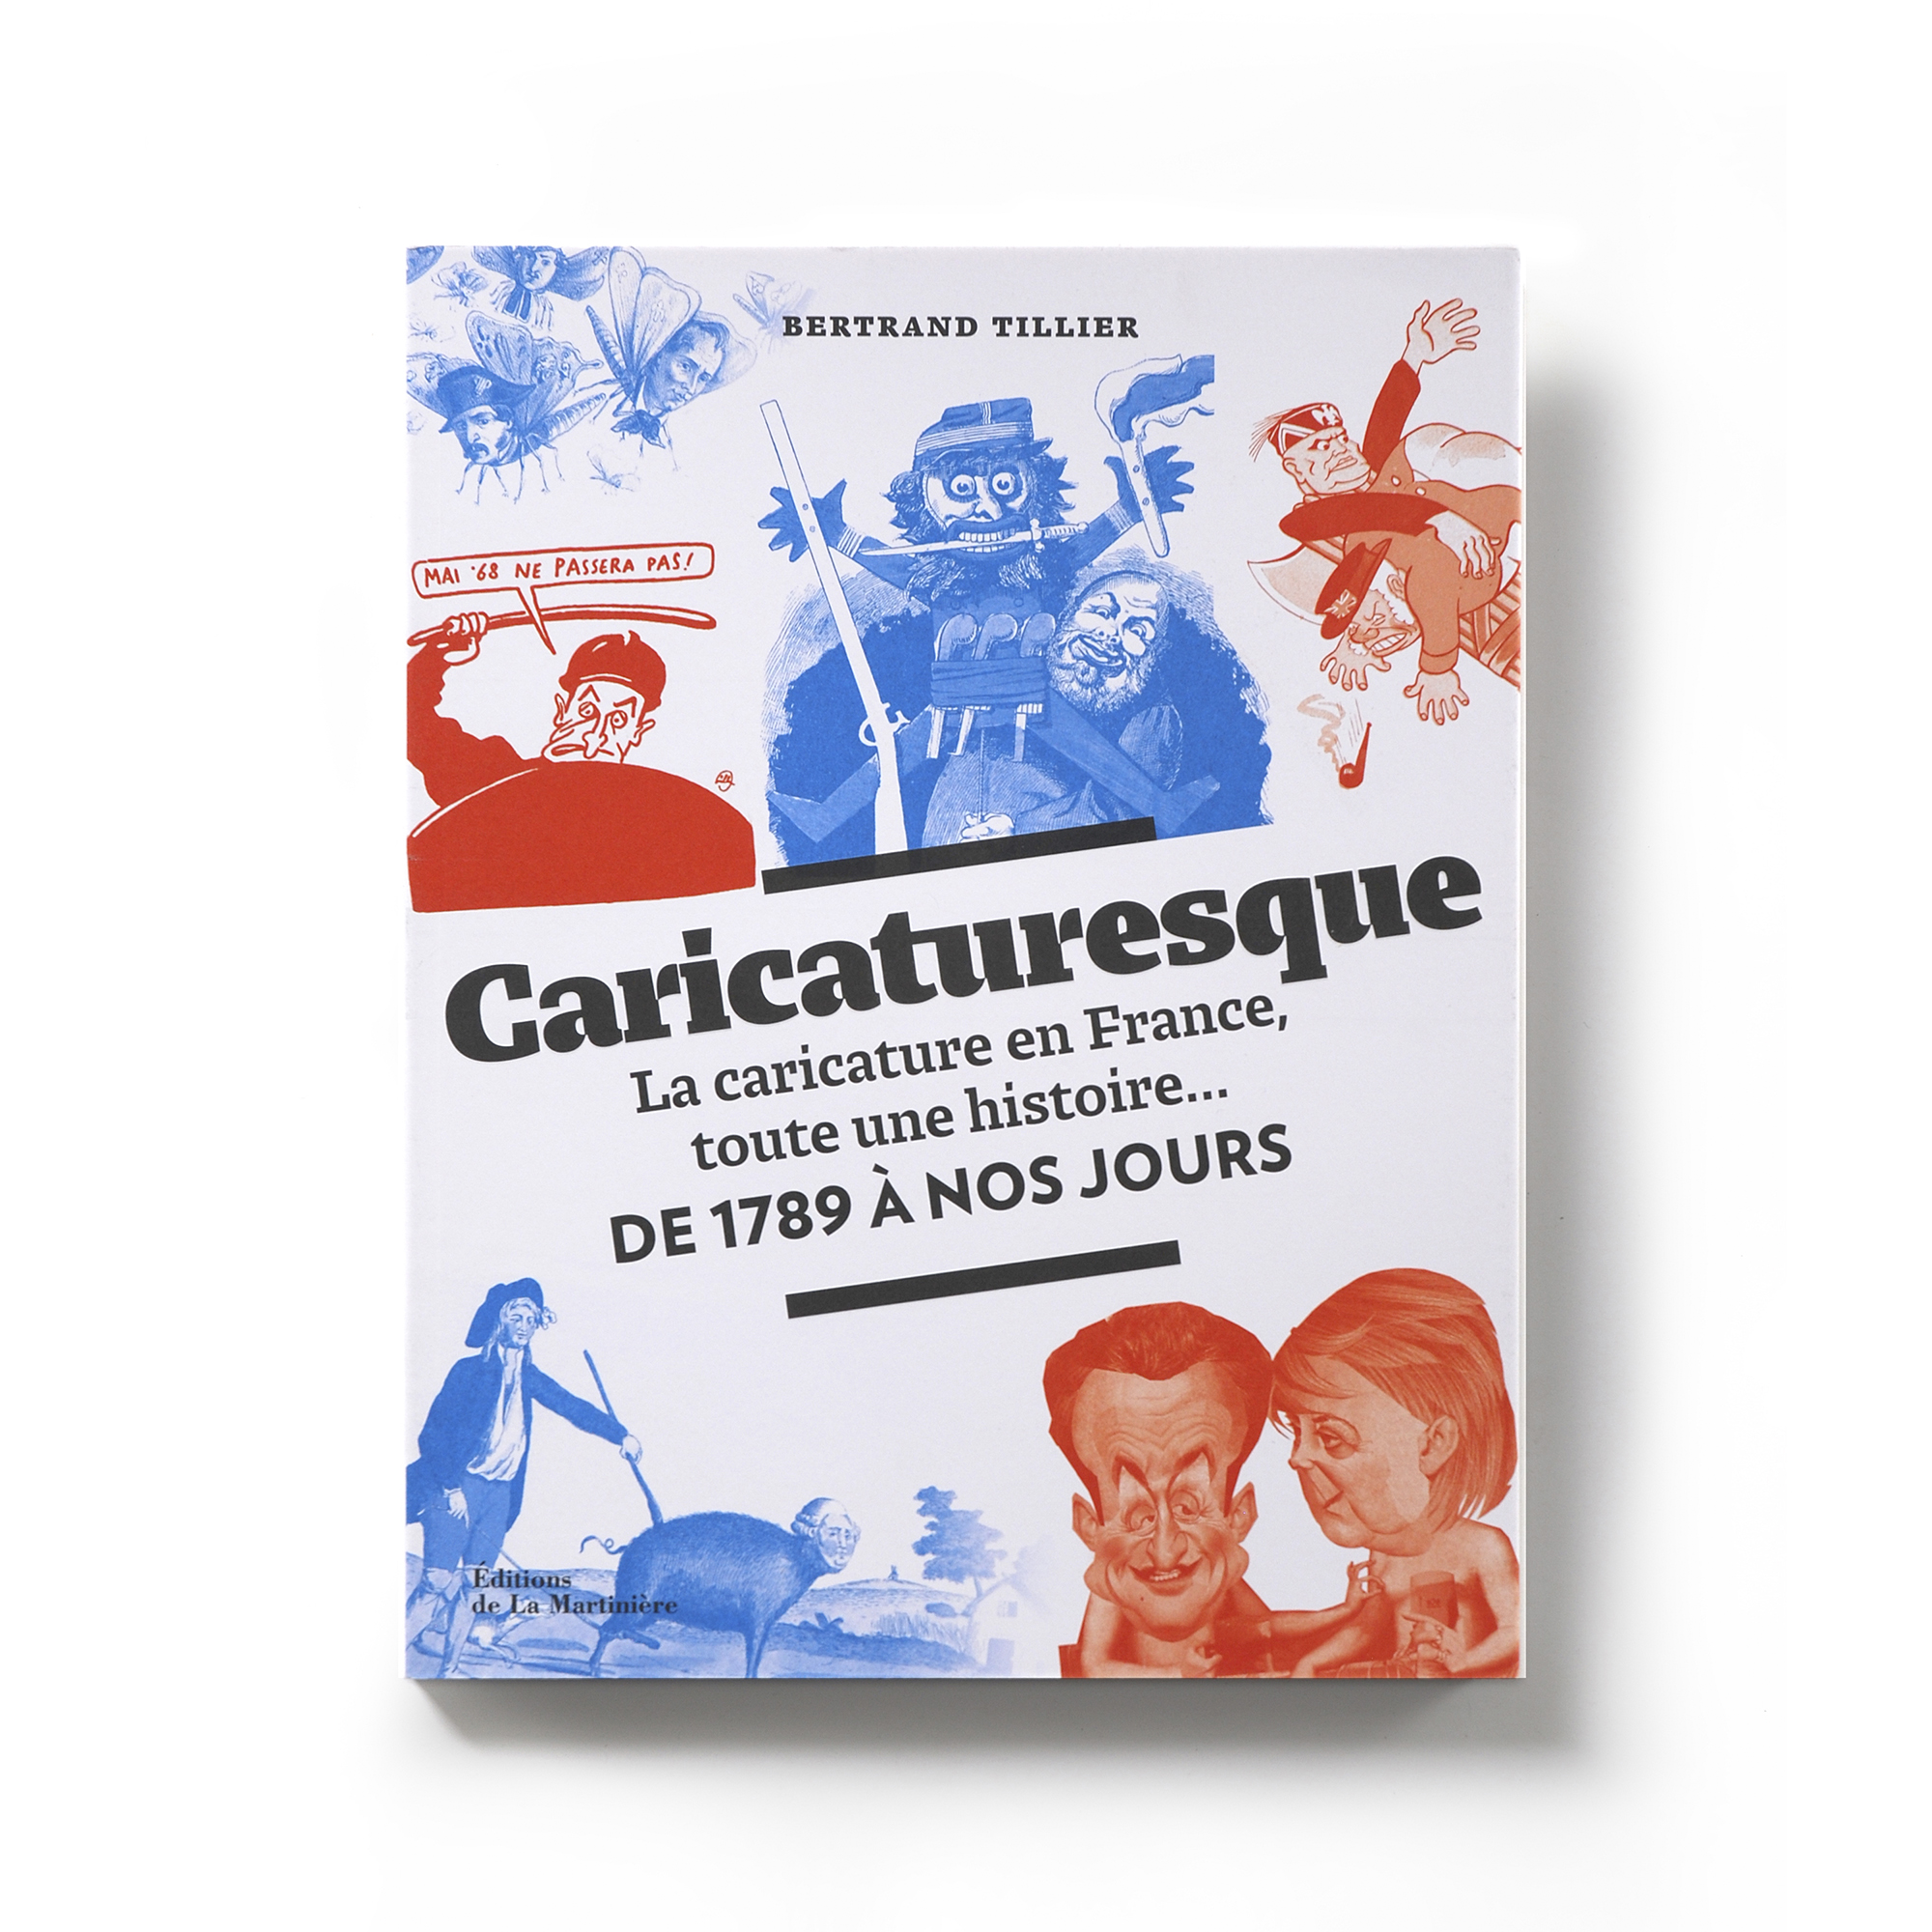   Caricaturesque  La caricature en France, toute une histoire... De 1789 à nos jours  Bertrand Tillier  Éditions de La Martinière 192 pages 